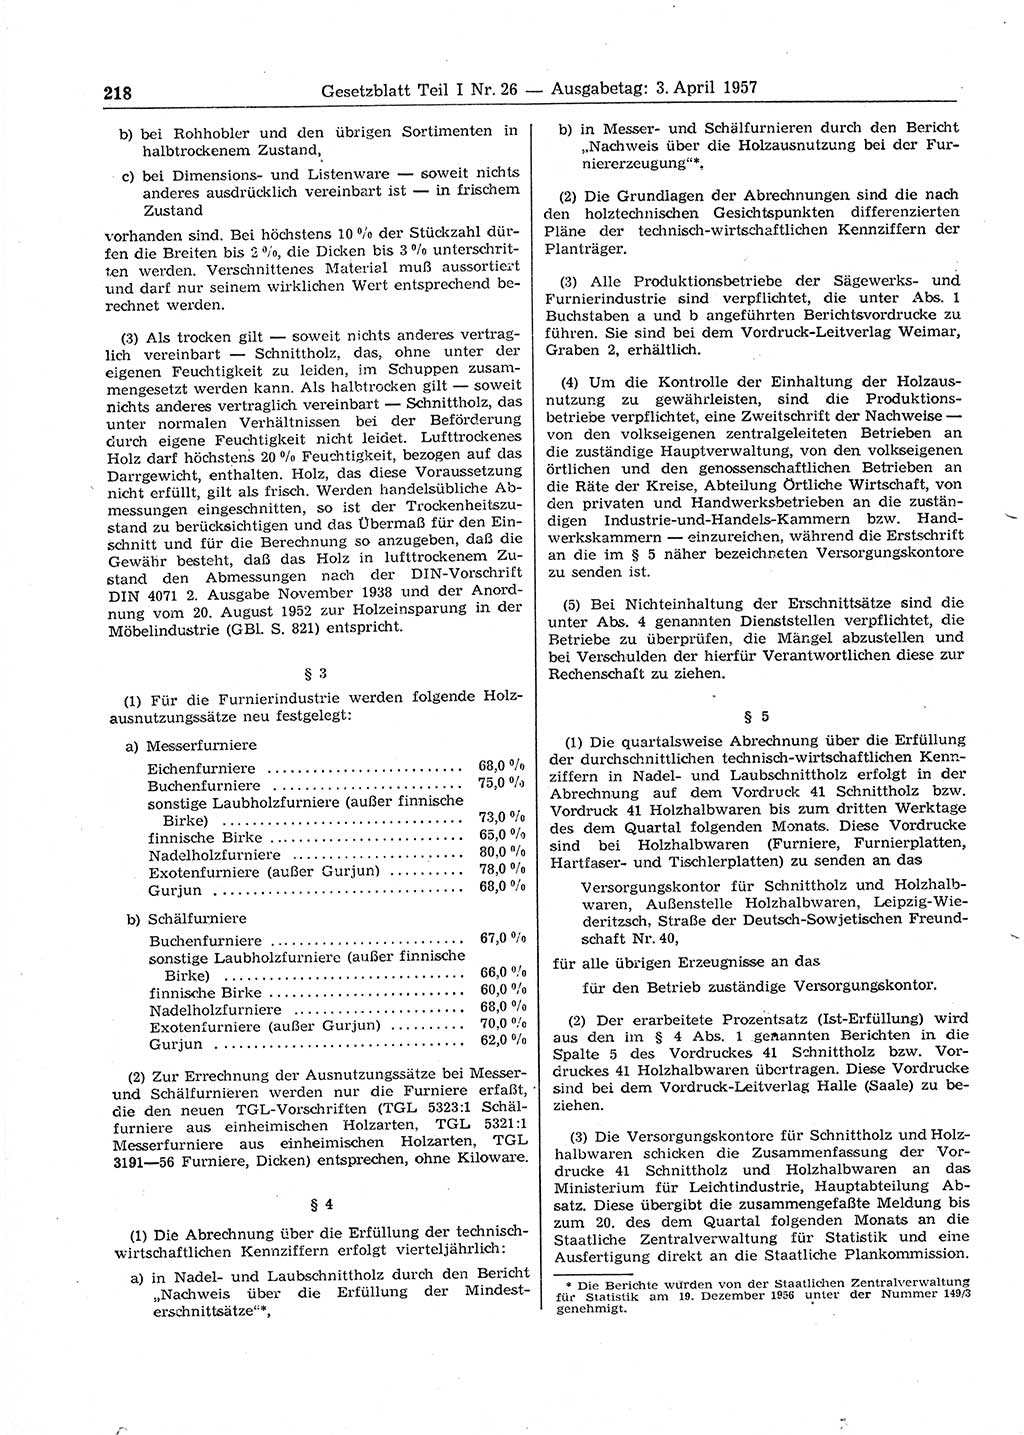 Gesetzblatt (GBl.) der Deutschen Demokratischen Republik (DDR) Teil Ⅰ 1957, Seite 218 (GBl. DDR Ⅰ 1957, S. 218)